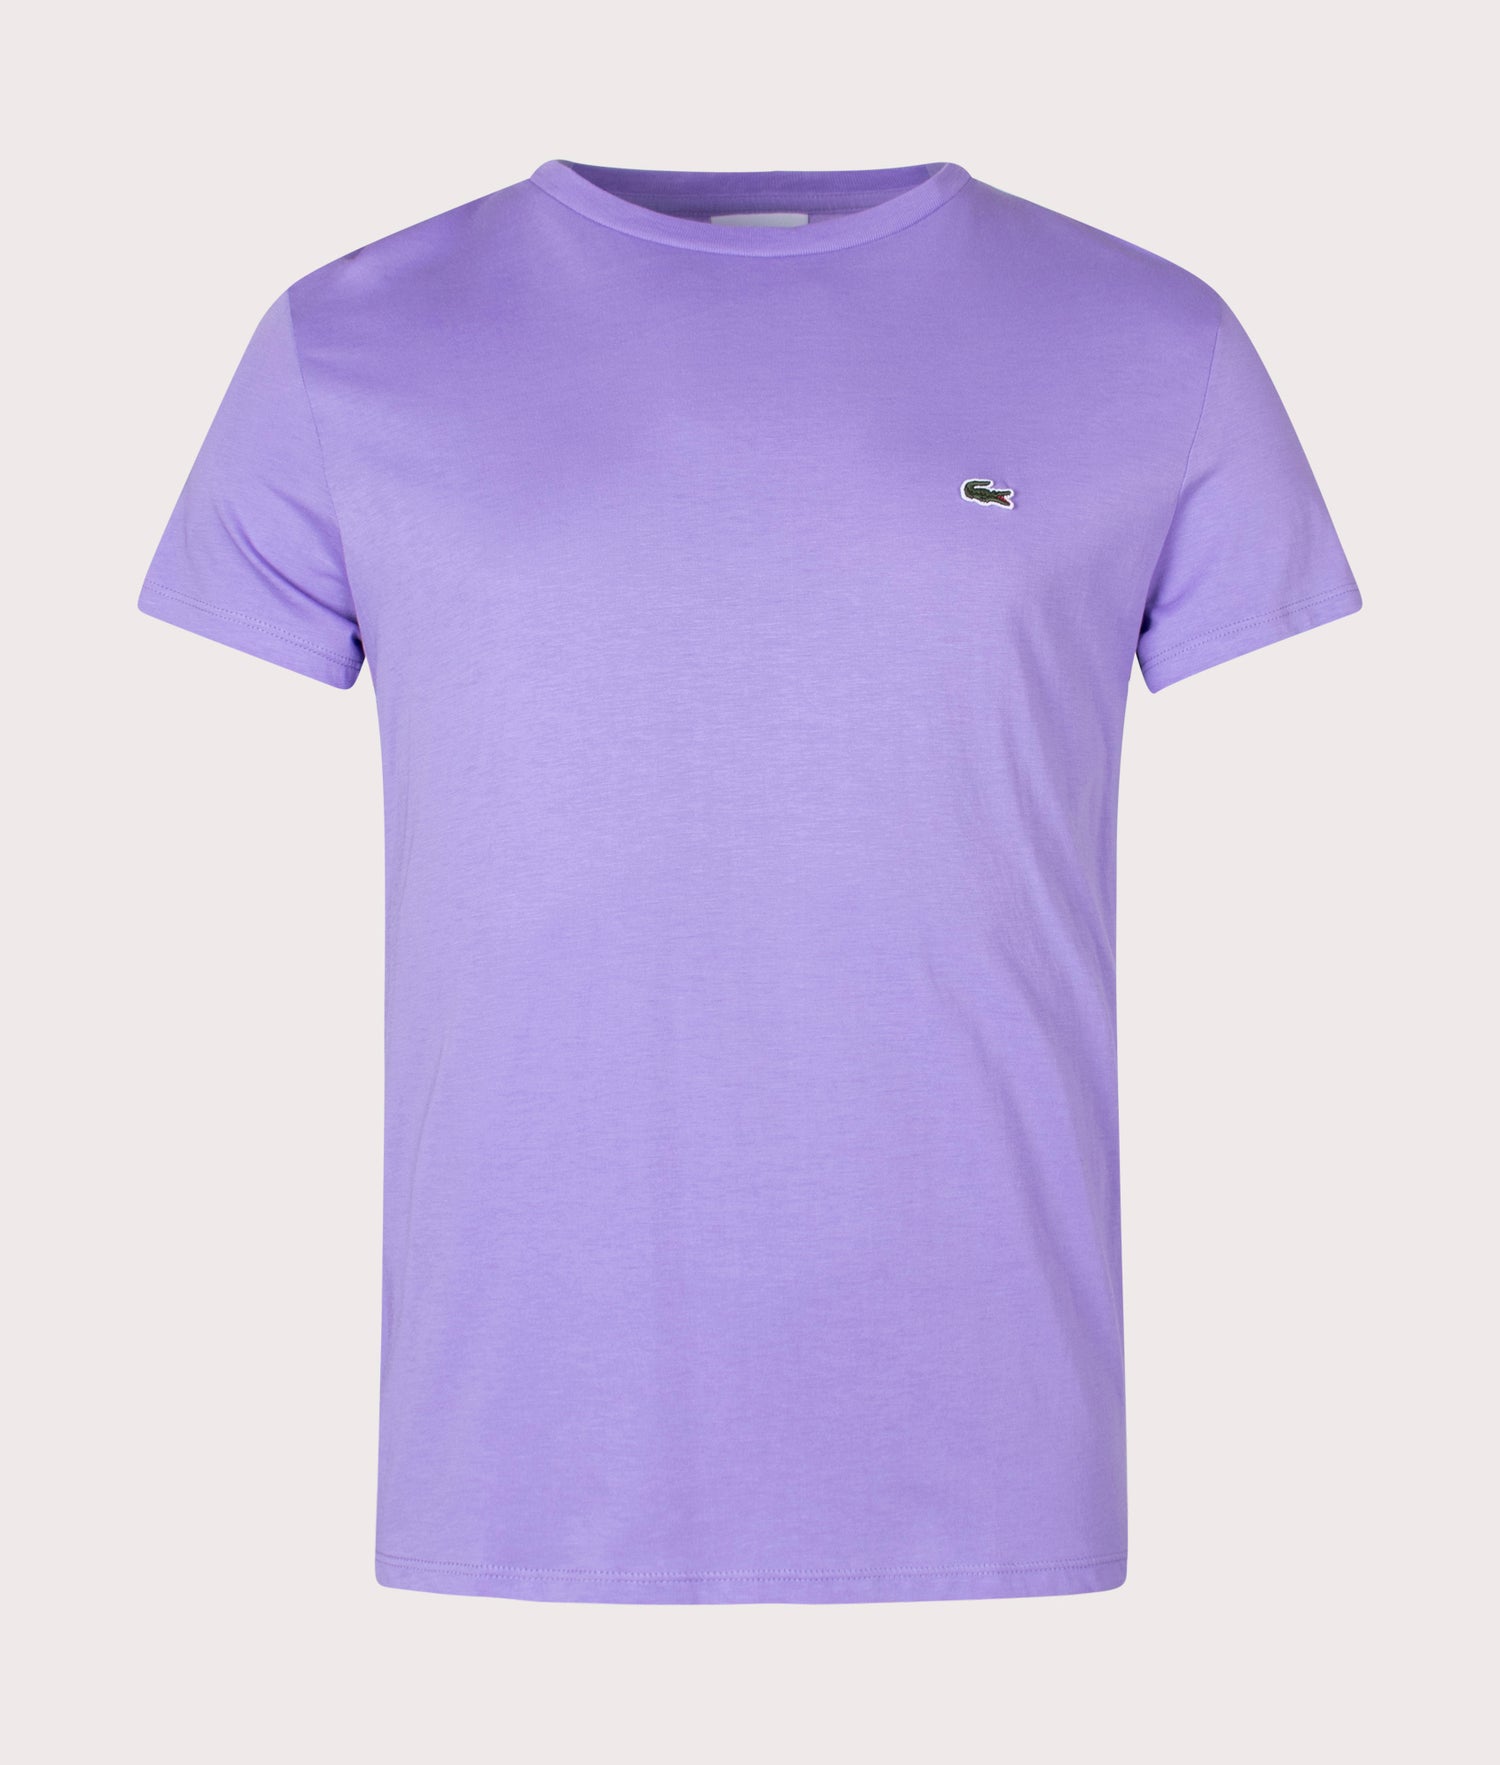 Pima Cotton Croc Logo T-shirt Purple | Lacoste | EQVVS